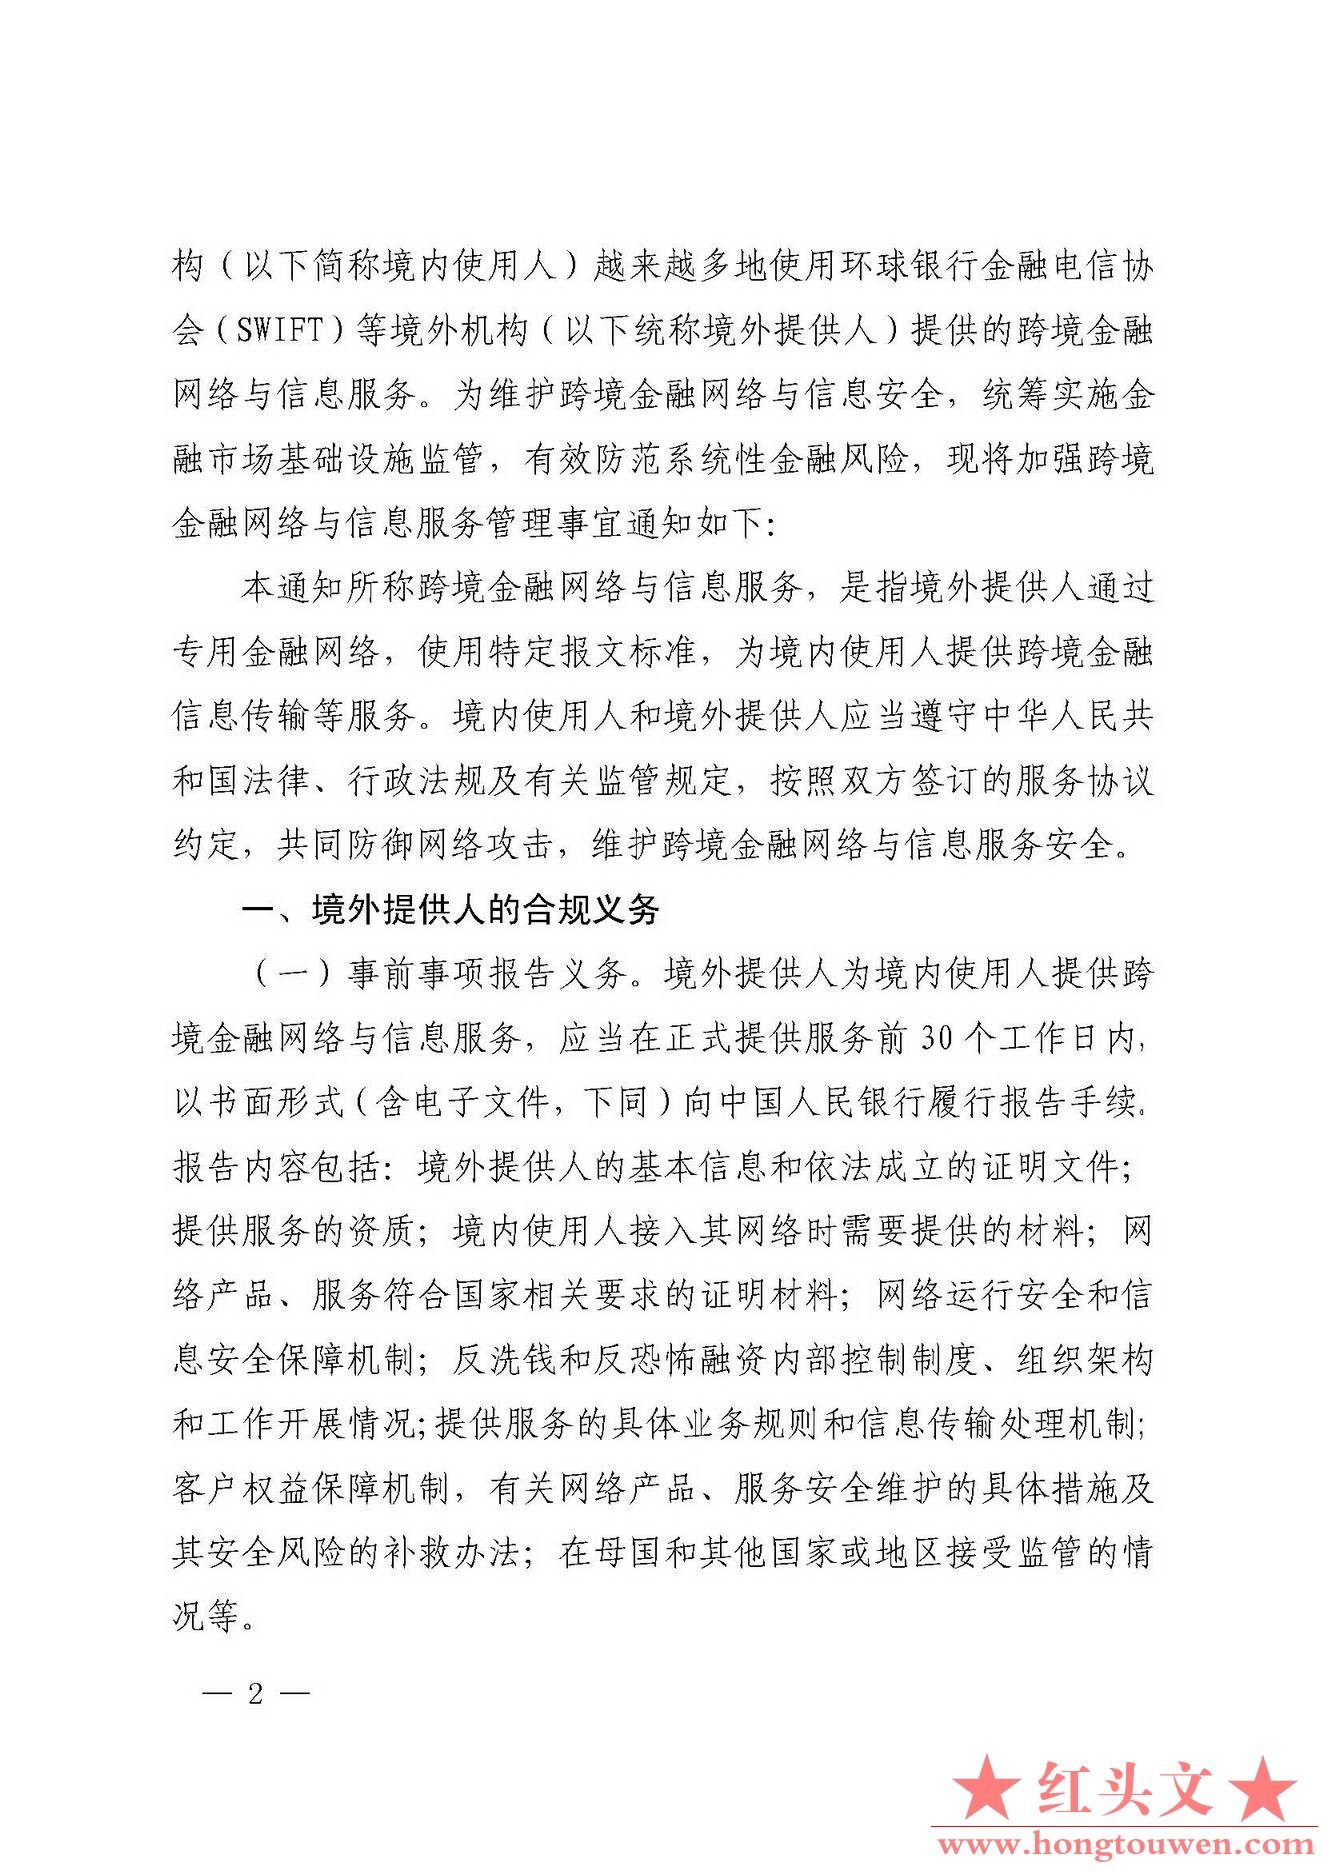 银发[2018]176号-中国人民银行关于加强跨境金融网络与信息服务管理的通知_页面_2.jpg.jpg